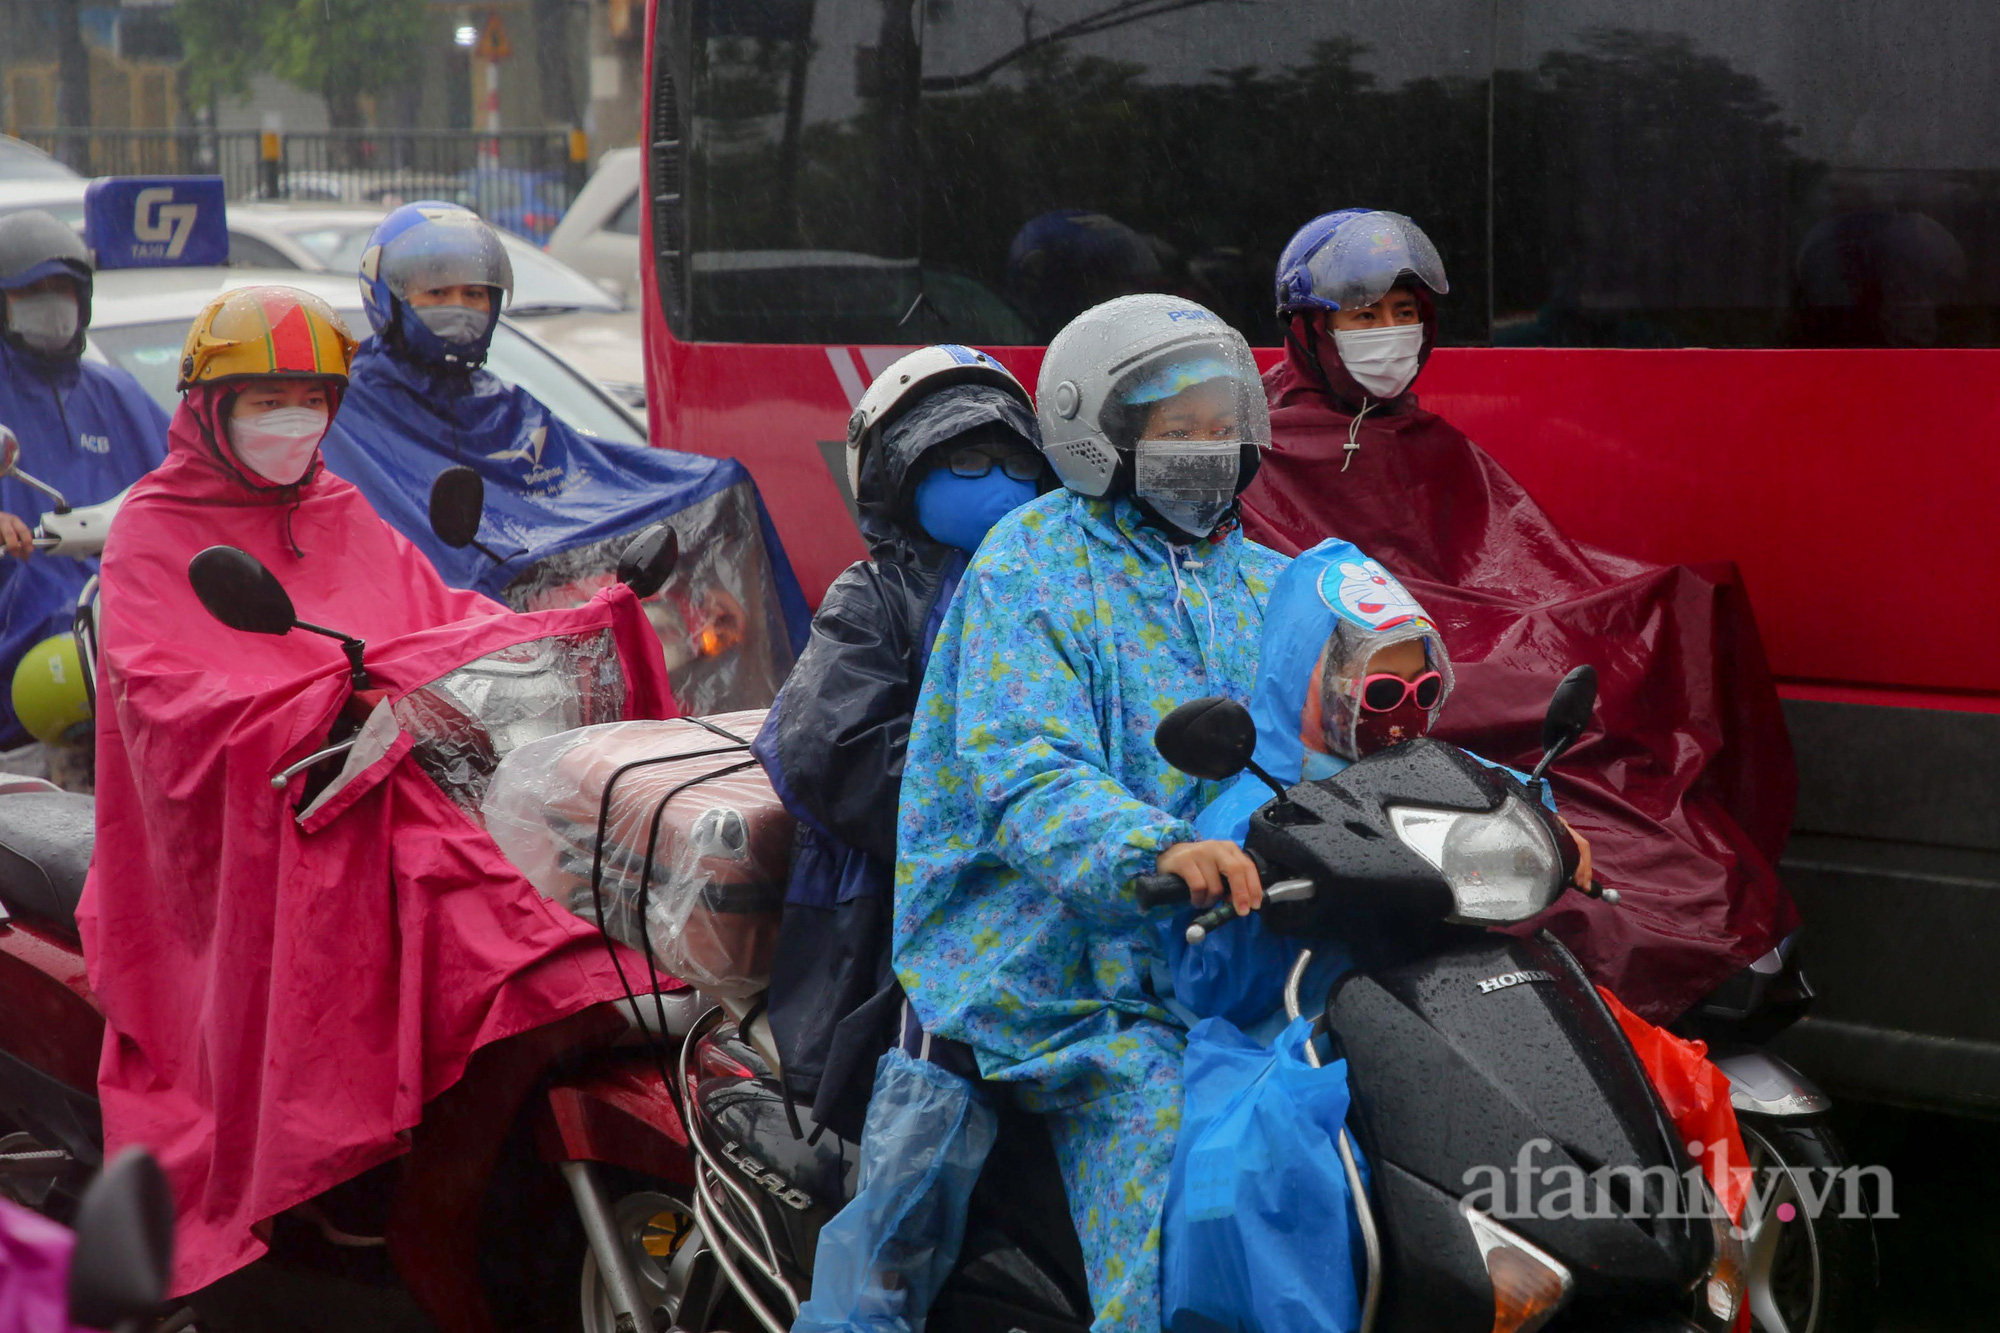 Hà Nội: Hàng nghìn người chạy xe máy trùm kín áo mưa, ùn ùn rời phố về quê ăn Tết - Ảnh 12.